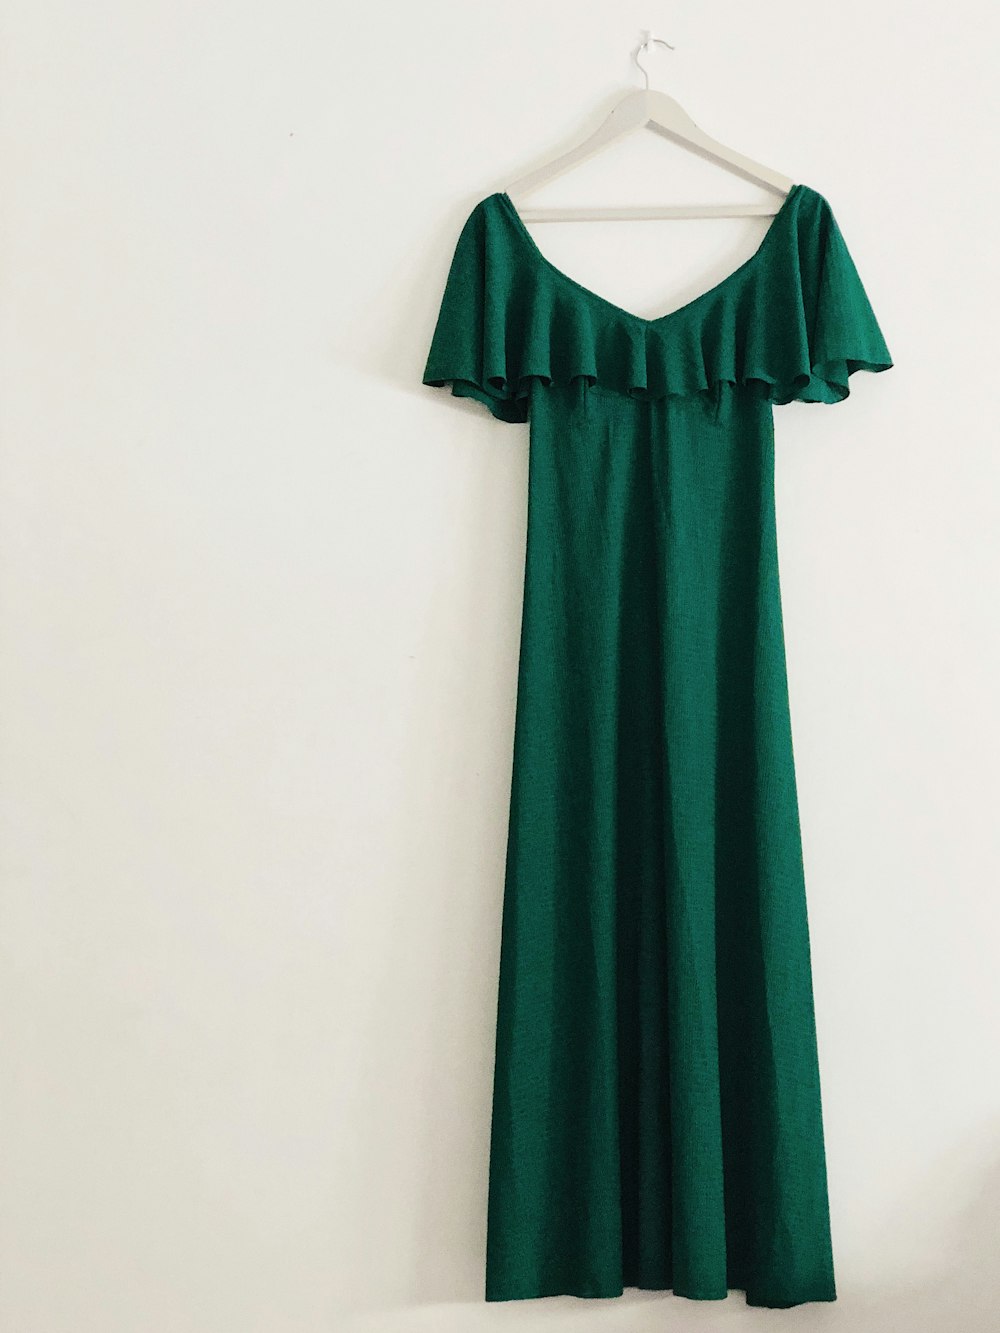 vestido verde sin mangas colgado en pared blanca